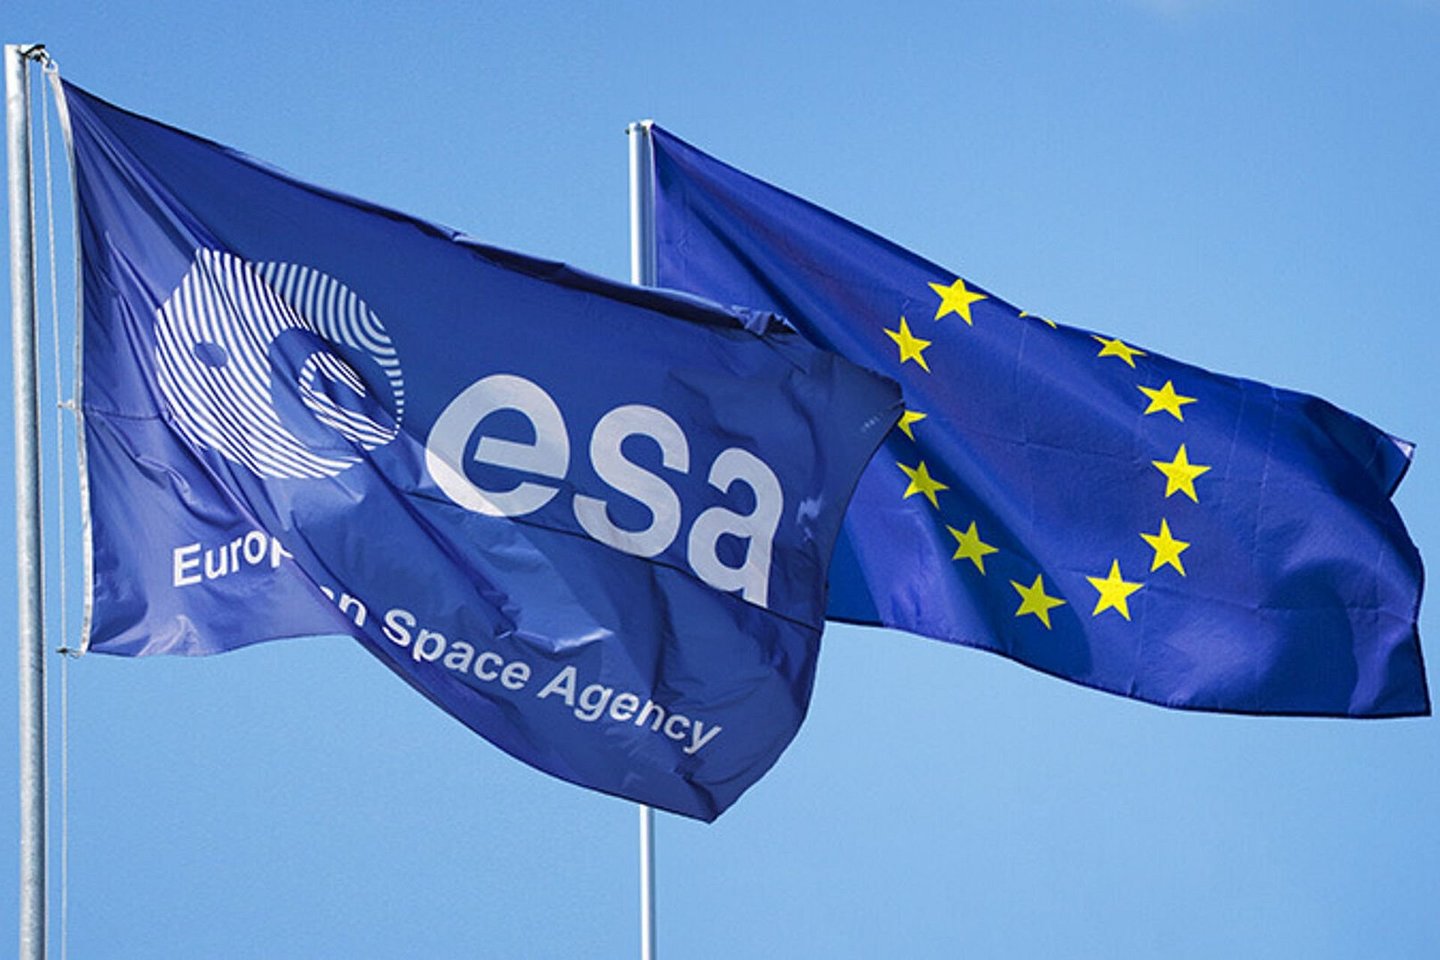  Europos kosmoso agentūros (EKA) taryba ketvirtadienį galutinai pritarė, kad Lietuva taptų asocijuota EKA nare, pranešė Ekonomikos ir inovacijų ministerija.<br> EKA nuotr.